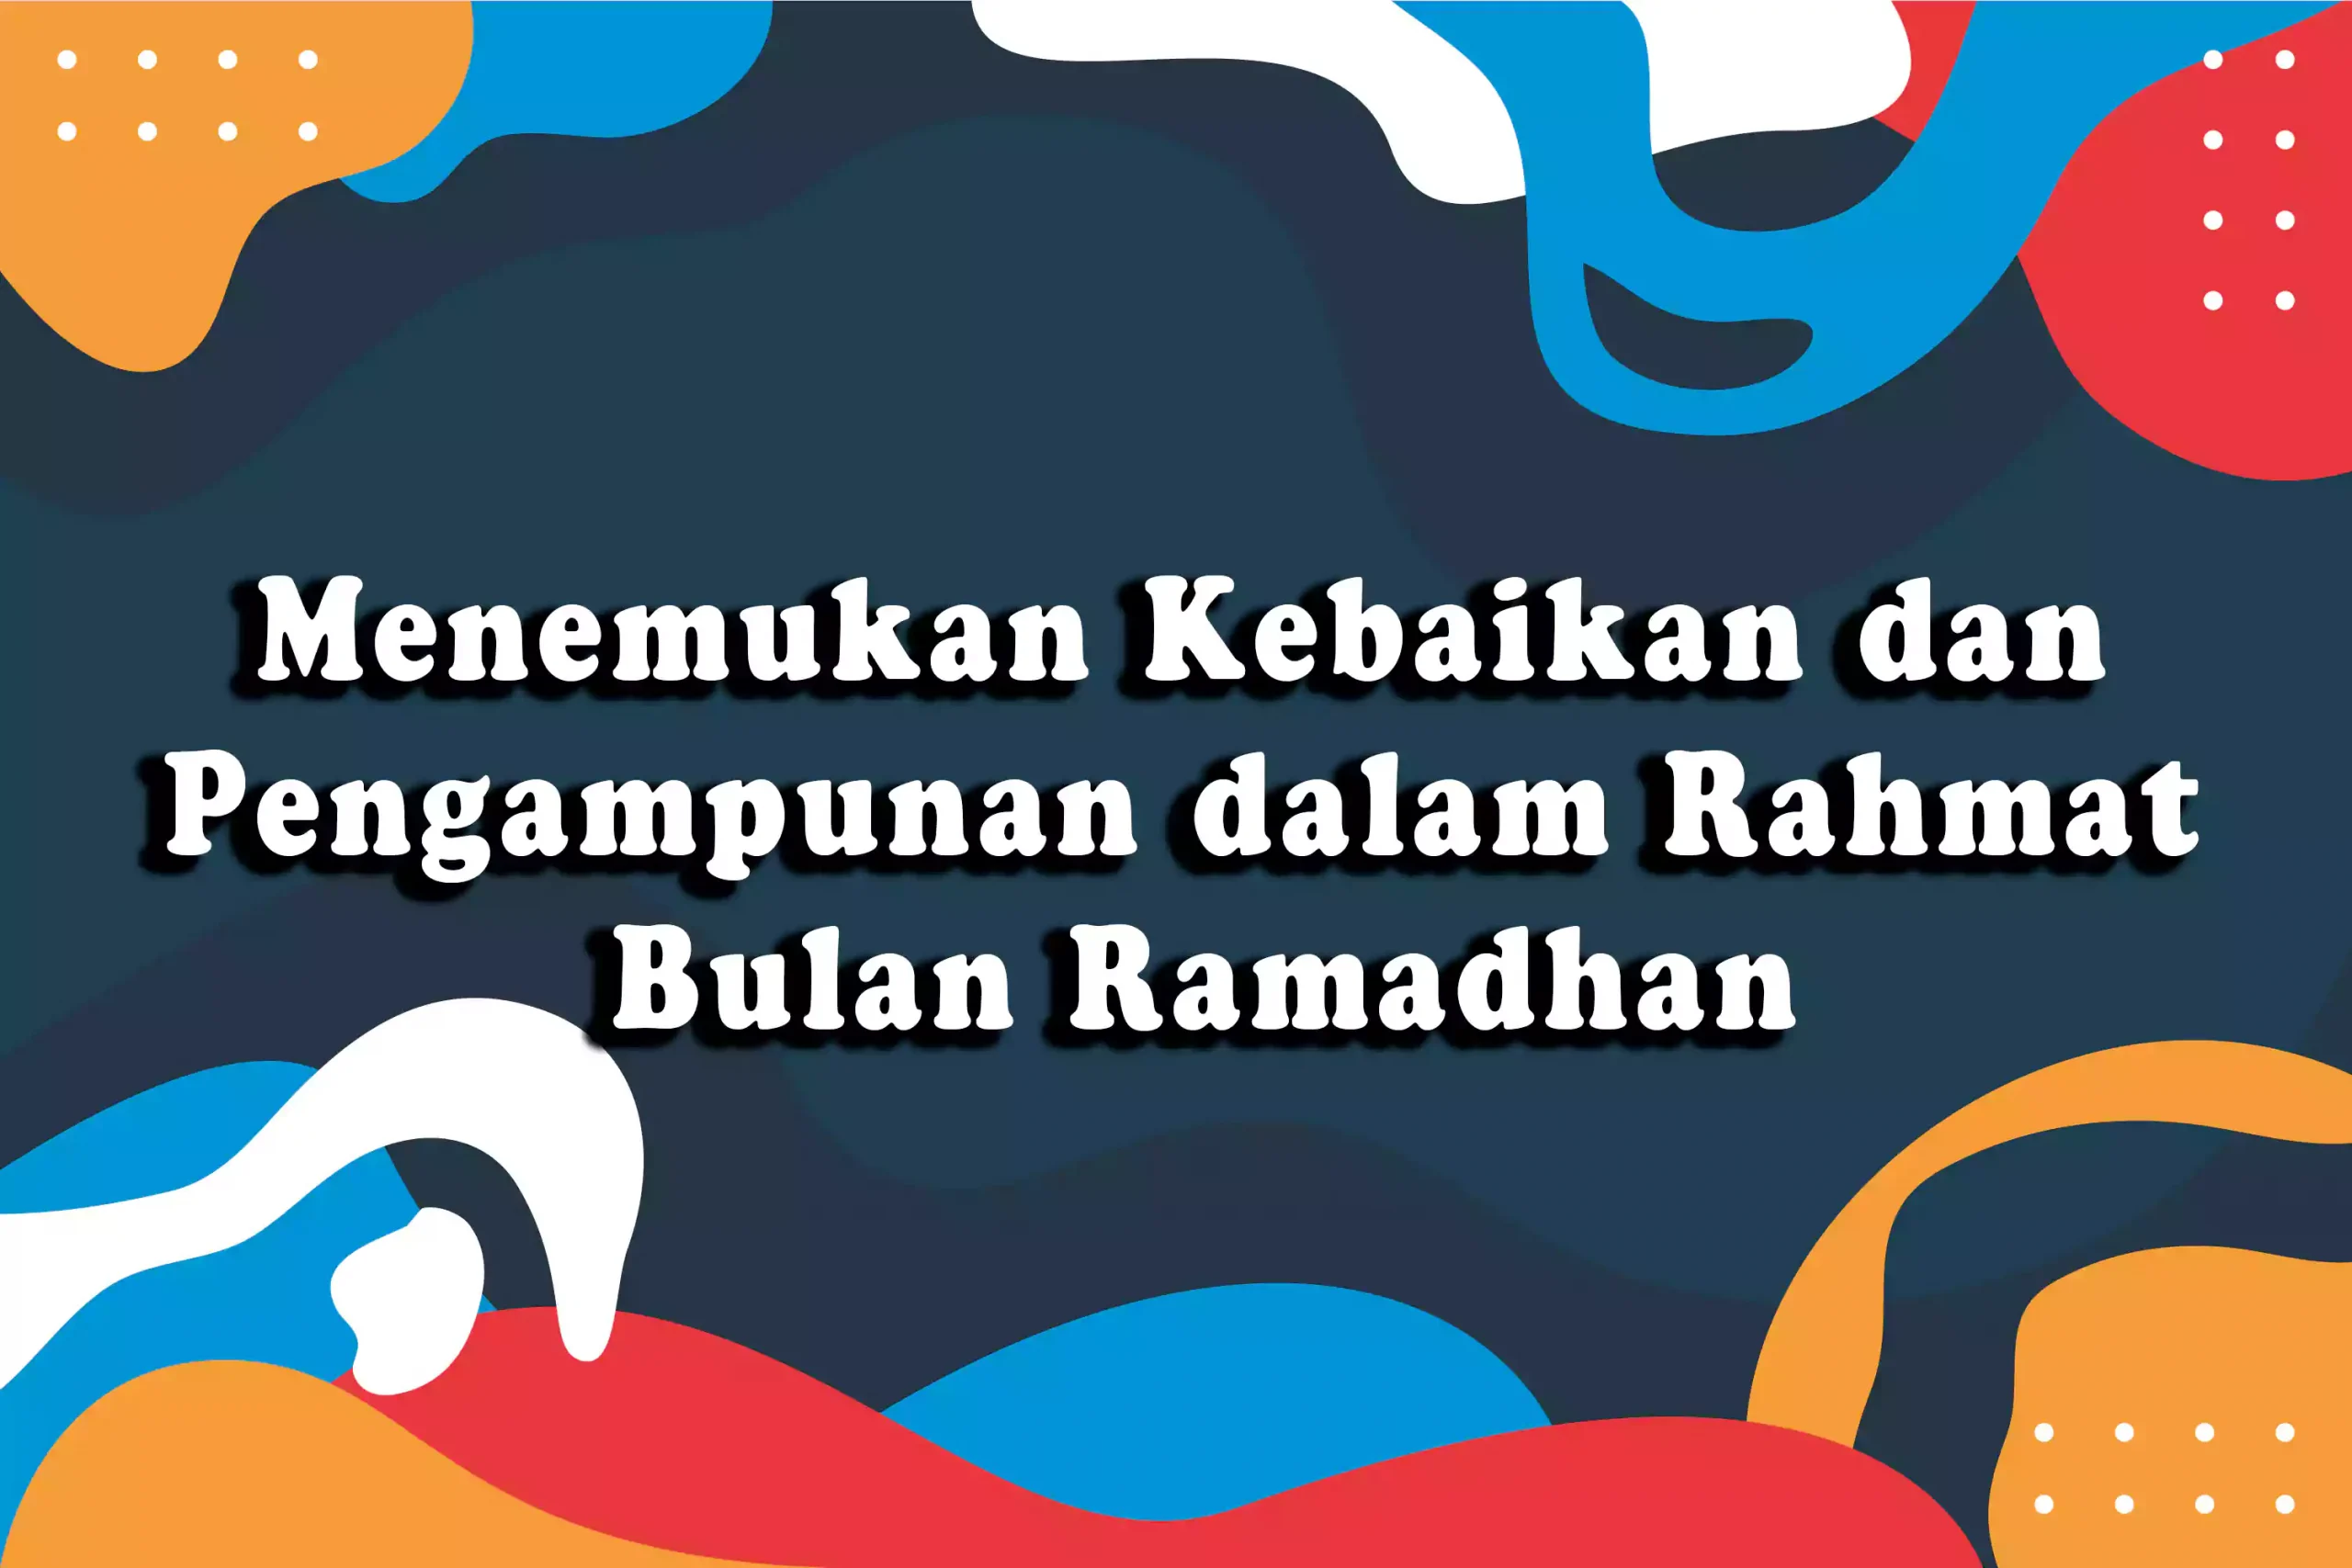 Menemukan Kebaikan dan Pengampunan dalam Rahmat Bulan Ramadhan